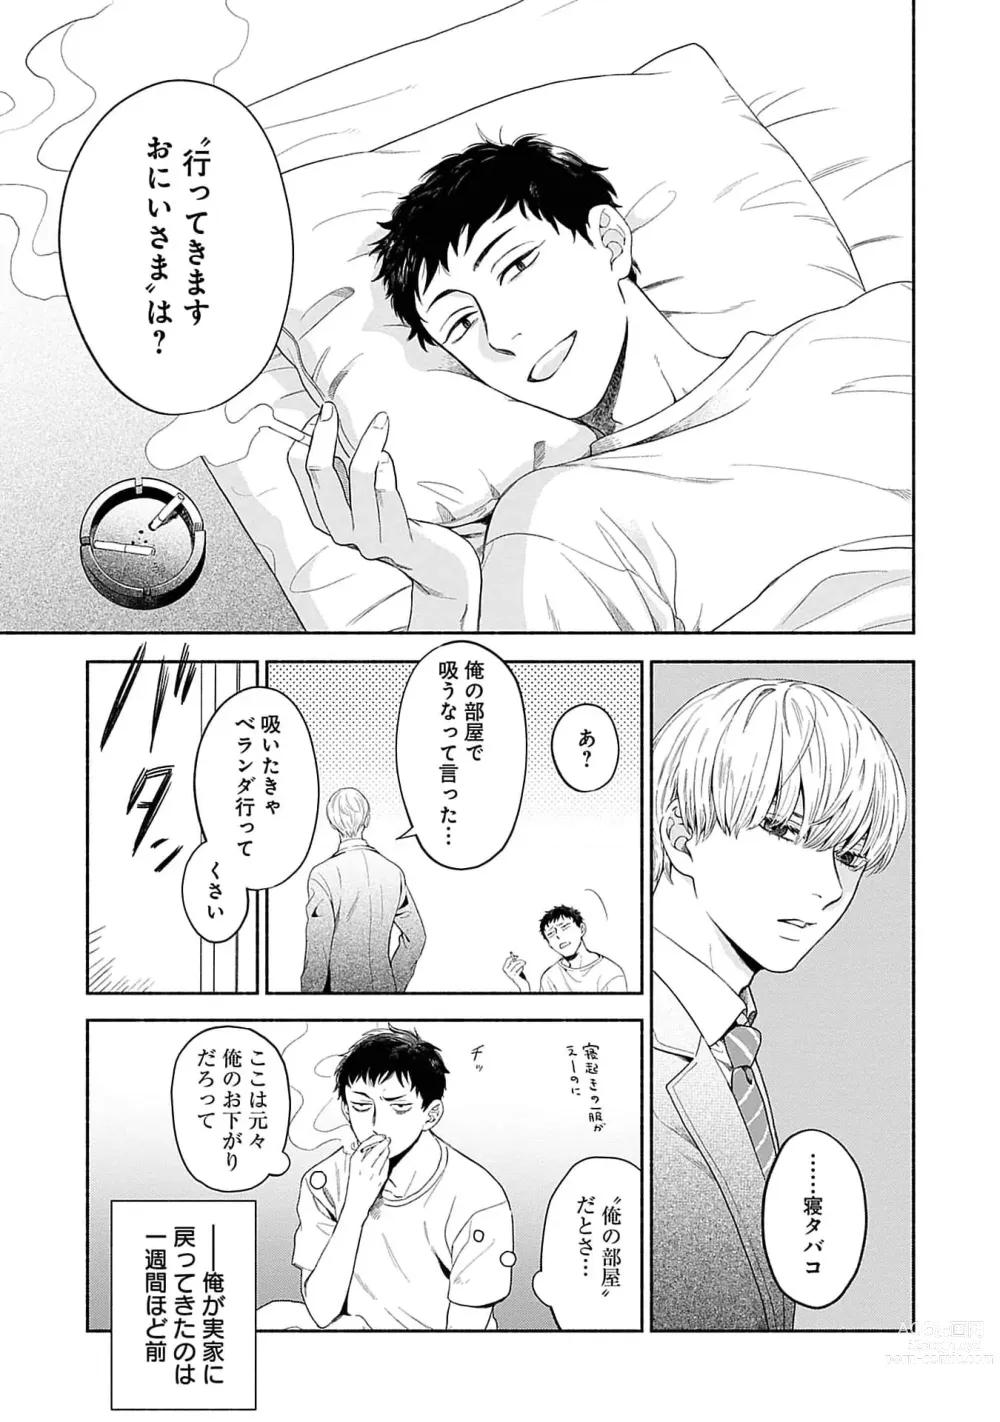 Page 5 of manga Yoru no Kyoudai